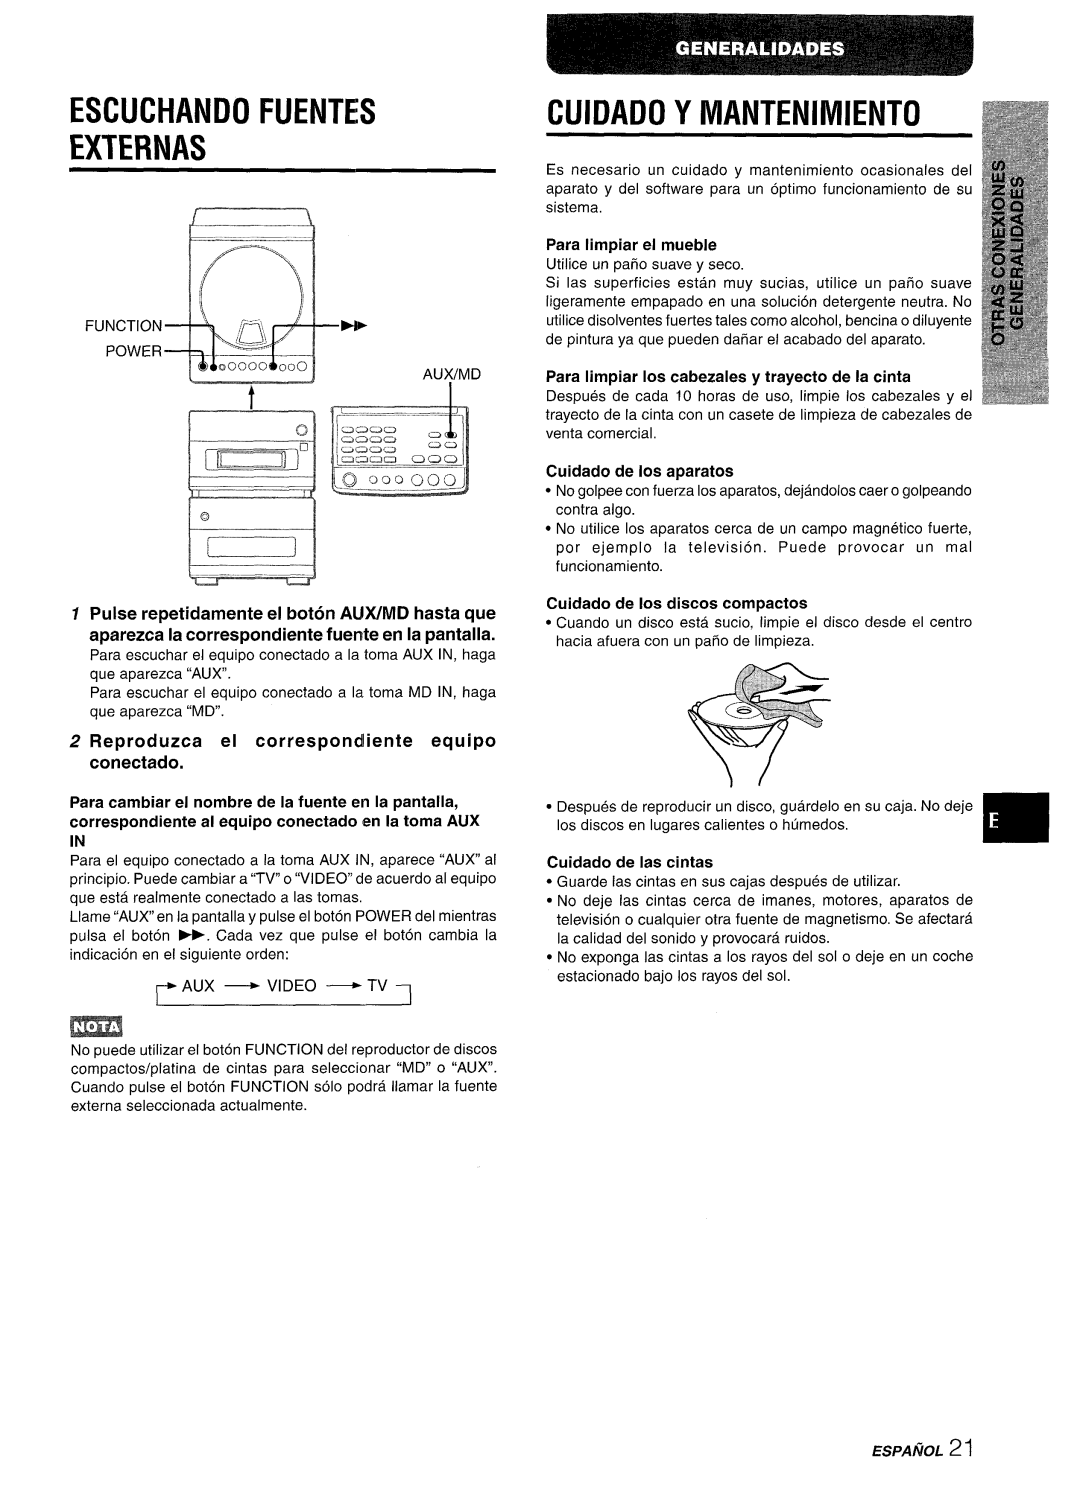 Aiwa XR-M88 manual Escuchandofuentes Externas, Cuidado Y Mantenimiento, Reproduzca el correspond iente equipo conectado 